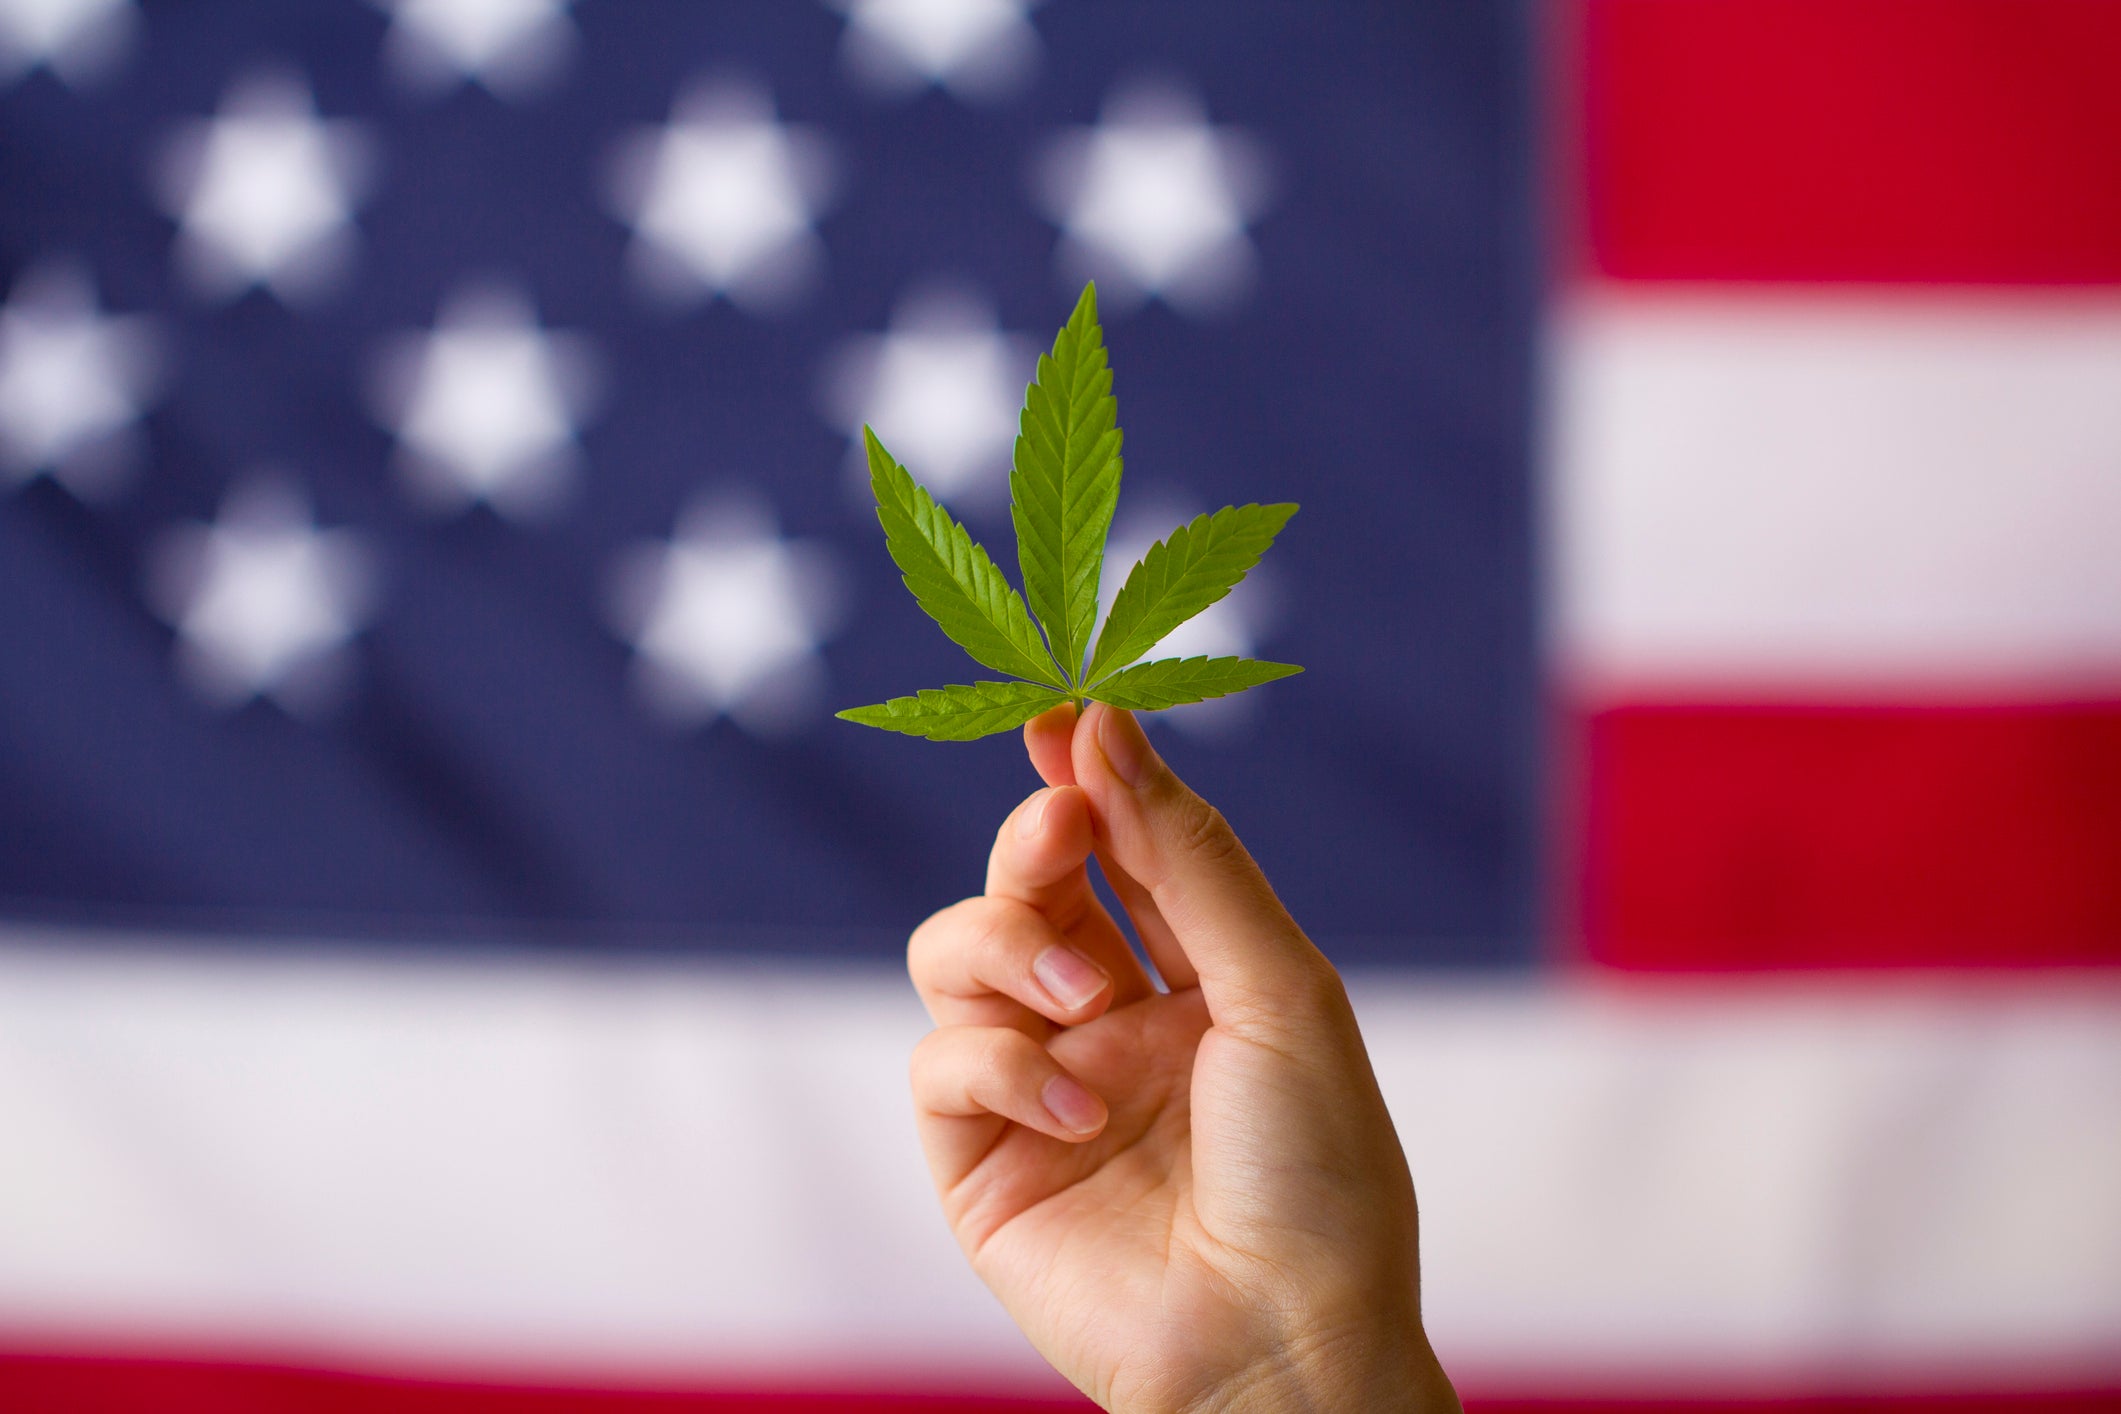 Legalización del cannabis en los estados unidos de américa. Hoja de cannabis en manos sobre fondo de bandera de Estados Unidos.